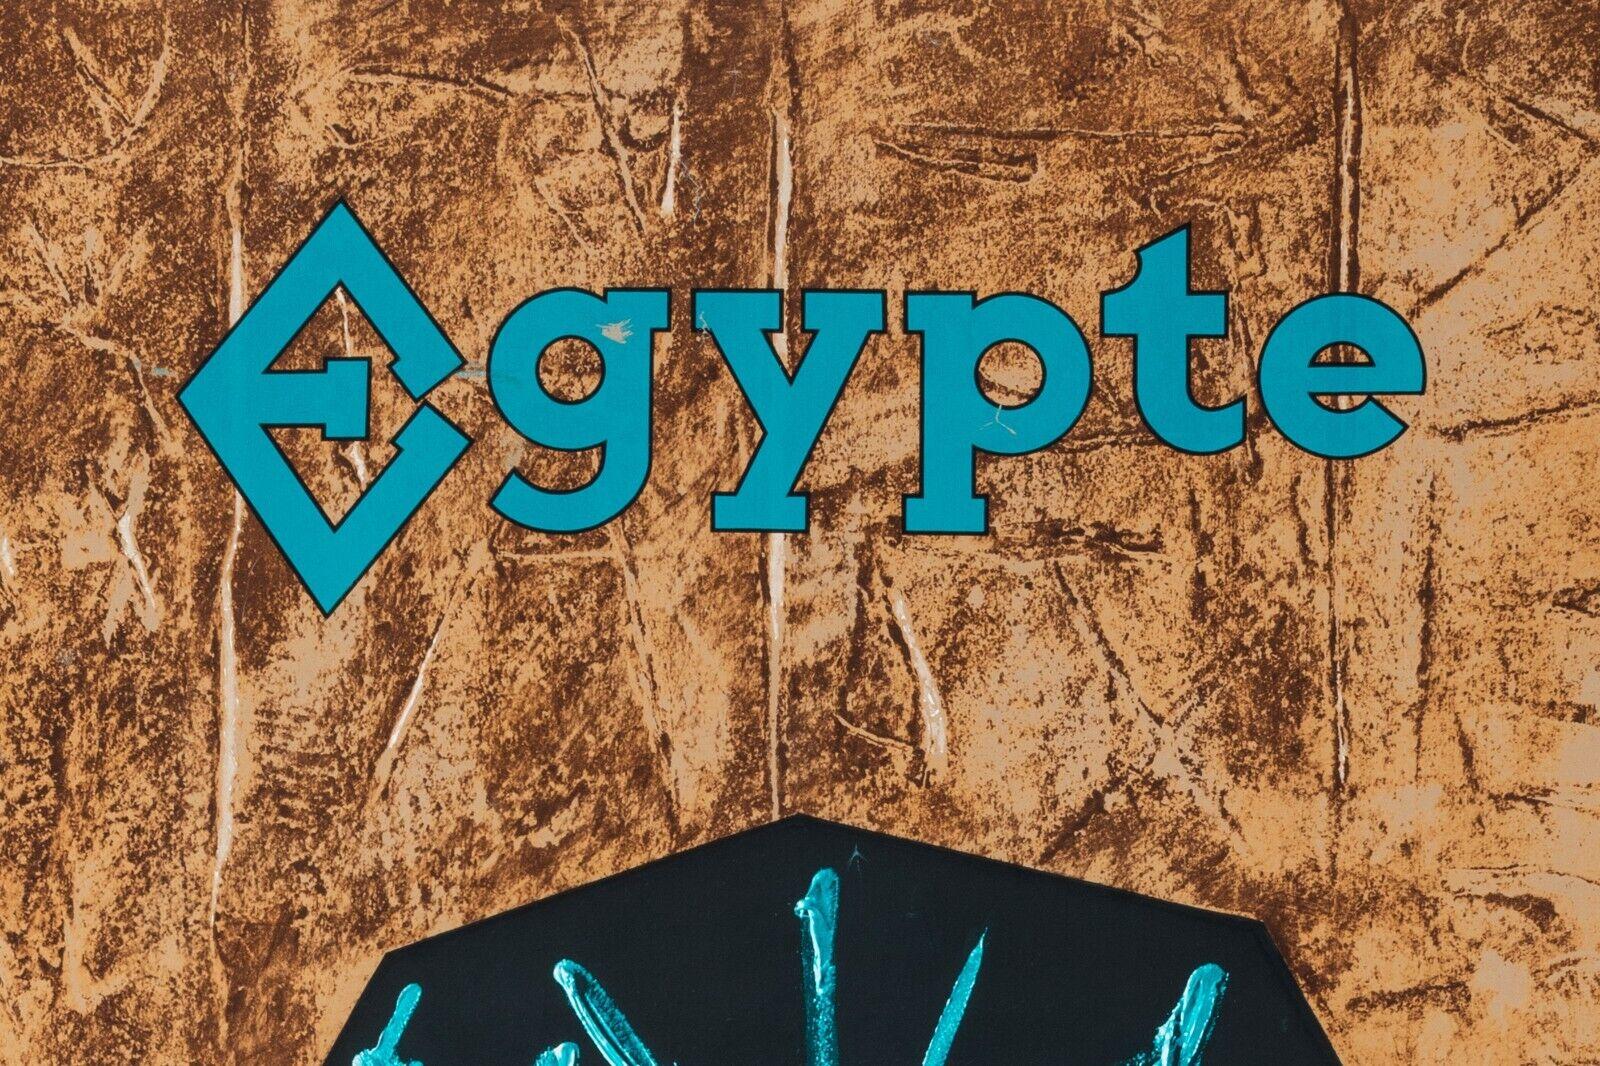 Original Poster-Mathieu G.-Air France-Ägypten-Tutankhamun-Pharao, 1967

Dieses Plakat wirbt für Reisen mit Air France nach Ägypten. Pharao Tutanchamun ist in einer Kartusche abgebildet.

Georges Mathieu war ein autodidaktischer Maler und